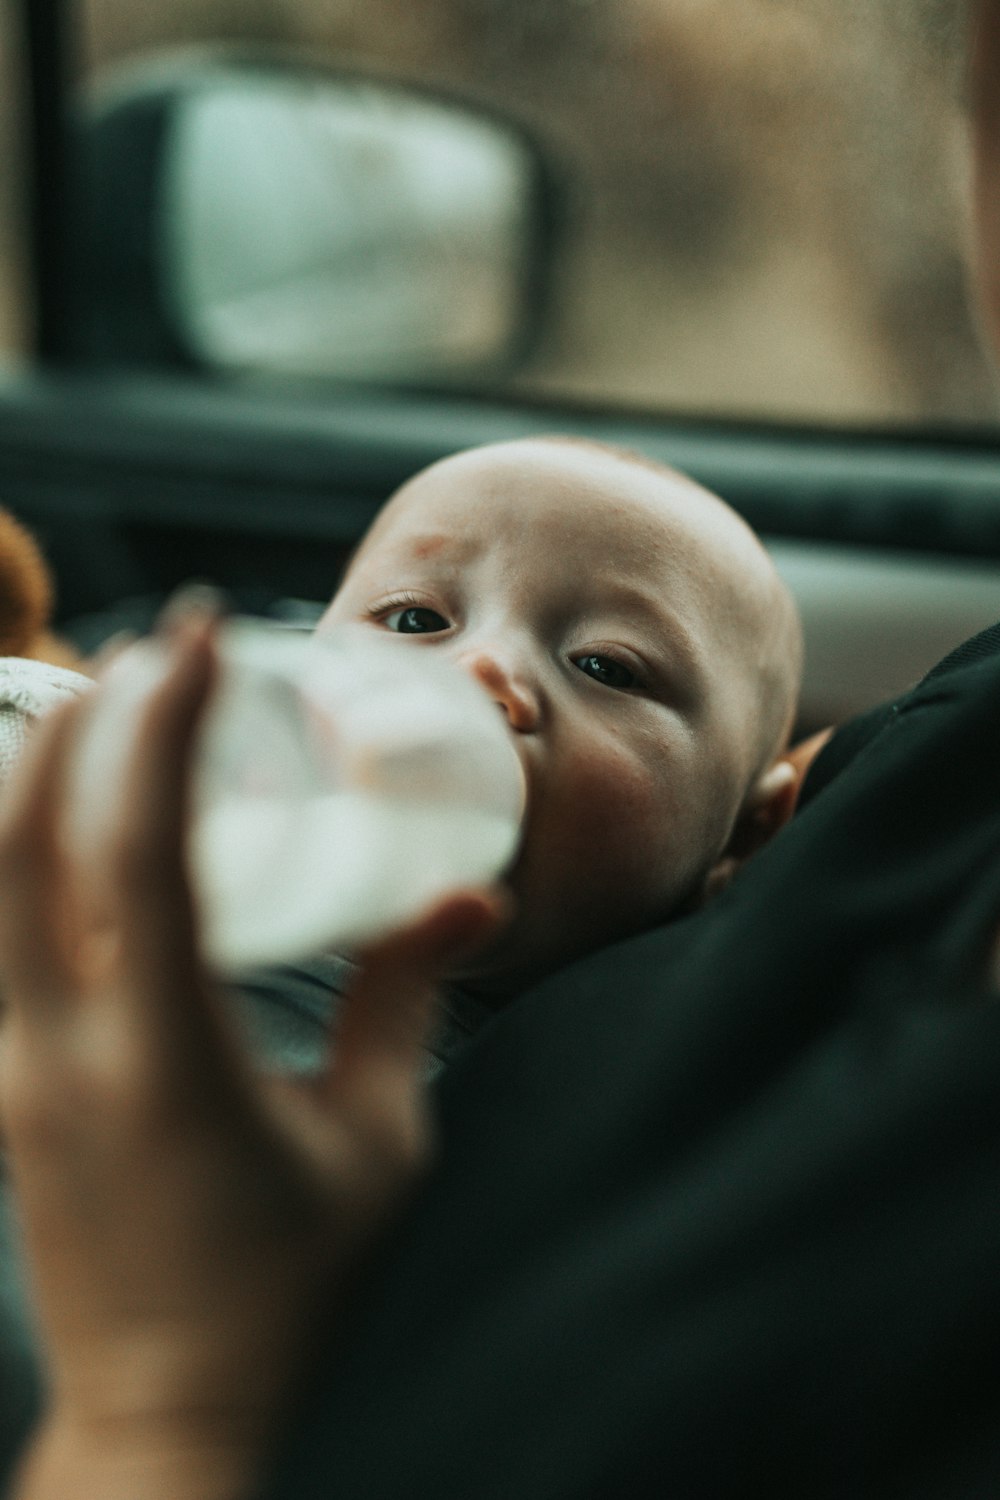 bebé con camisa azul bebiendo leche del biberón